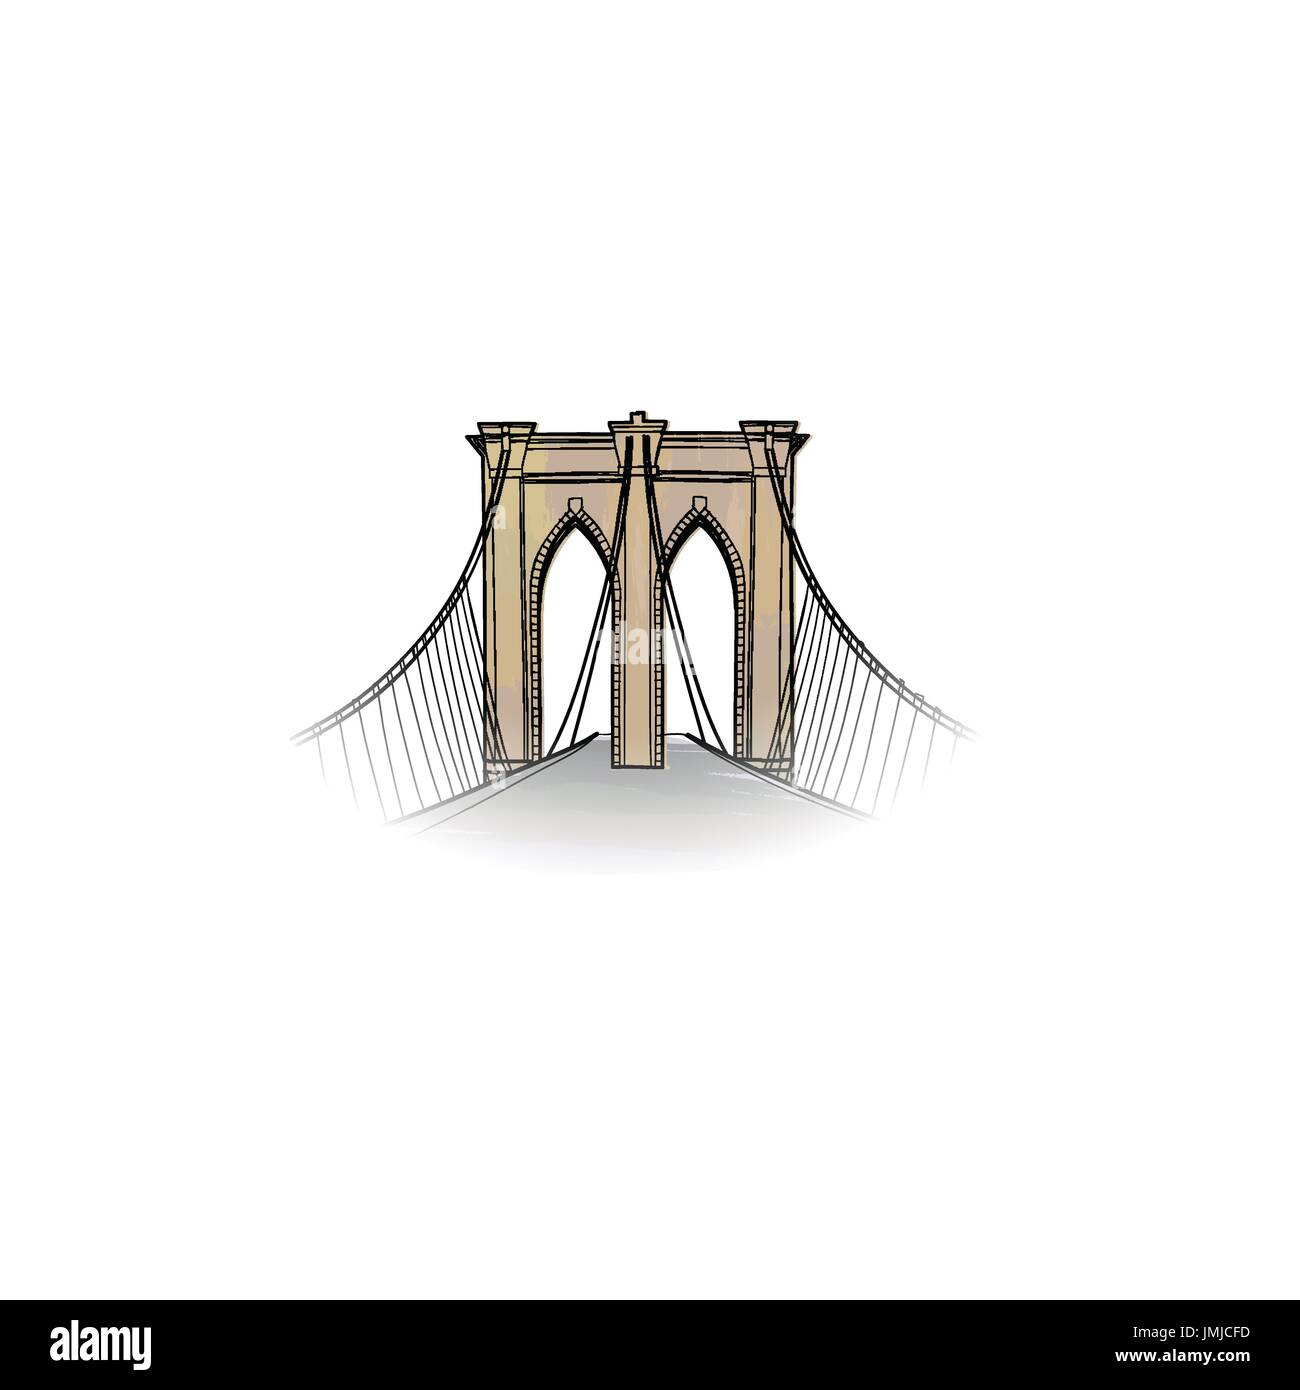 New York City segno. Viaggio icona di NYC. American landmark ponte di Brooklyn view Illustrazione Vettoriale